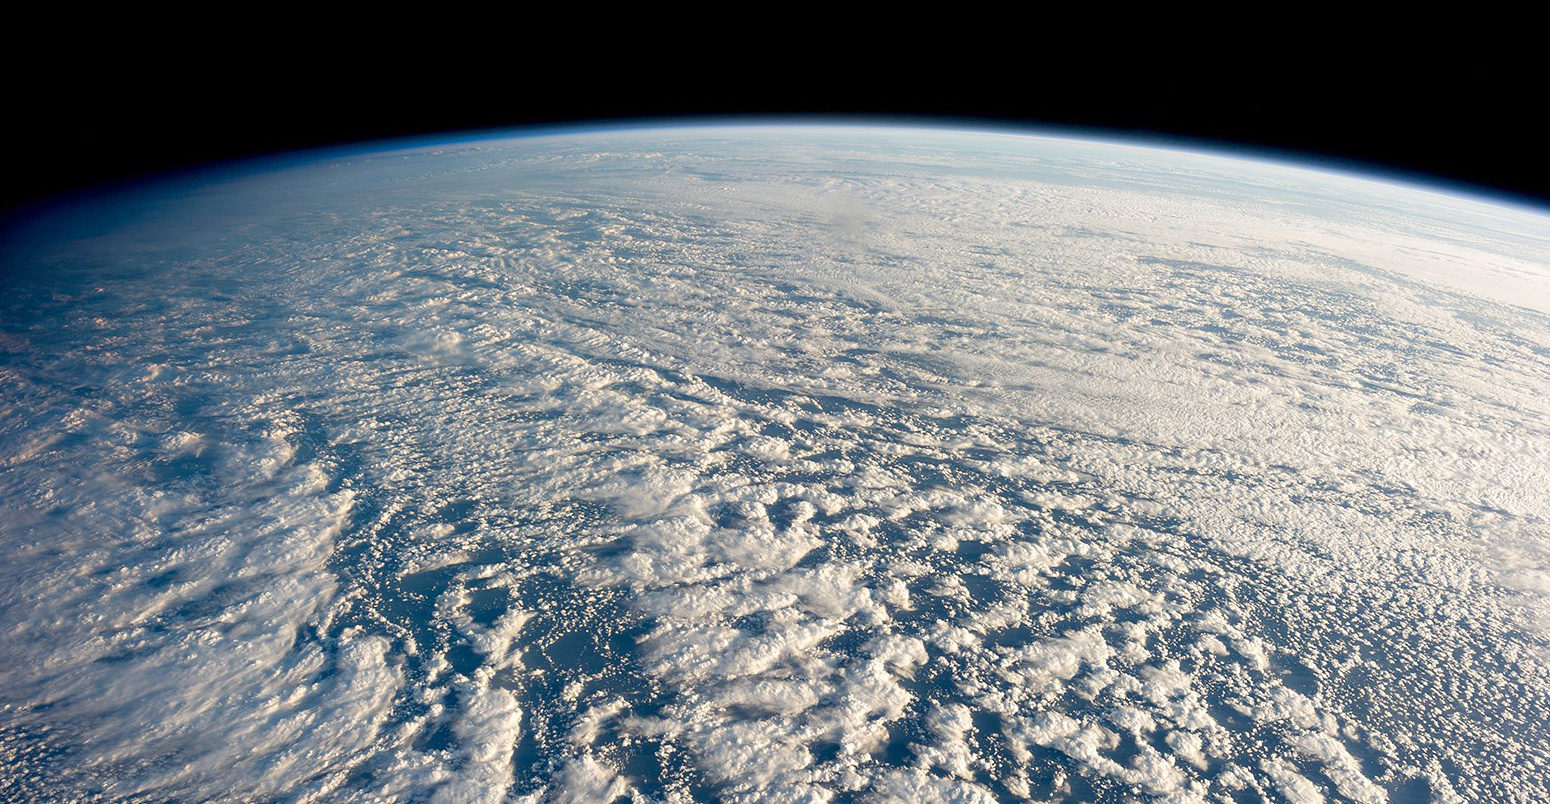 层积云在西北太平洋。来源:国际空间站远征34船员/ NASA /维基共享。